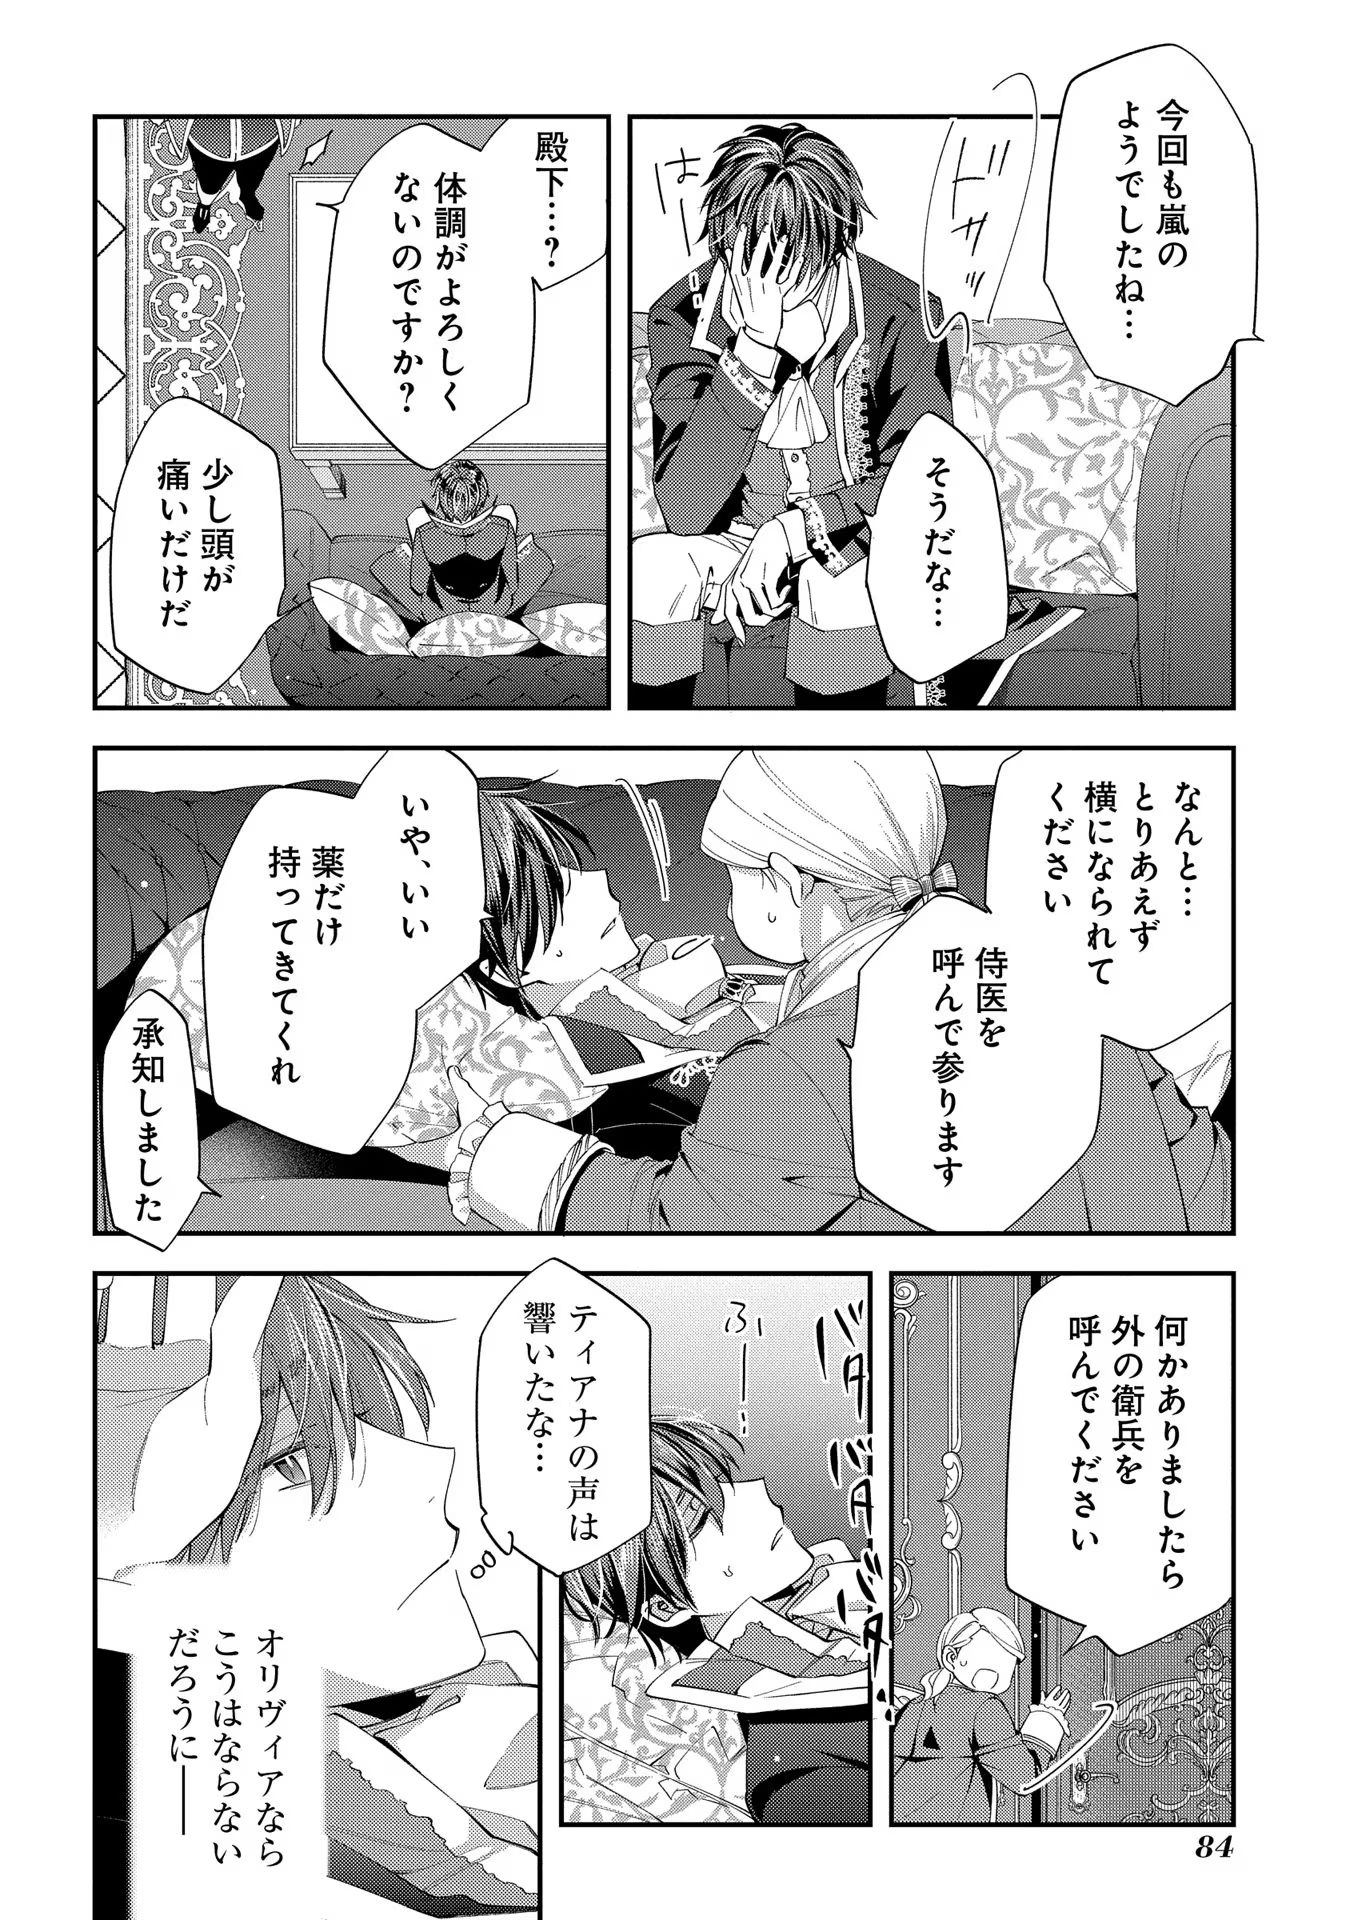 Outaishi ni Konyaku Hakisareta no de, Mou Baka no Furi wa Yameyou to Omoimasu - Chapter 13 - Page 18